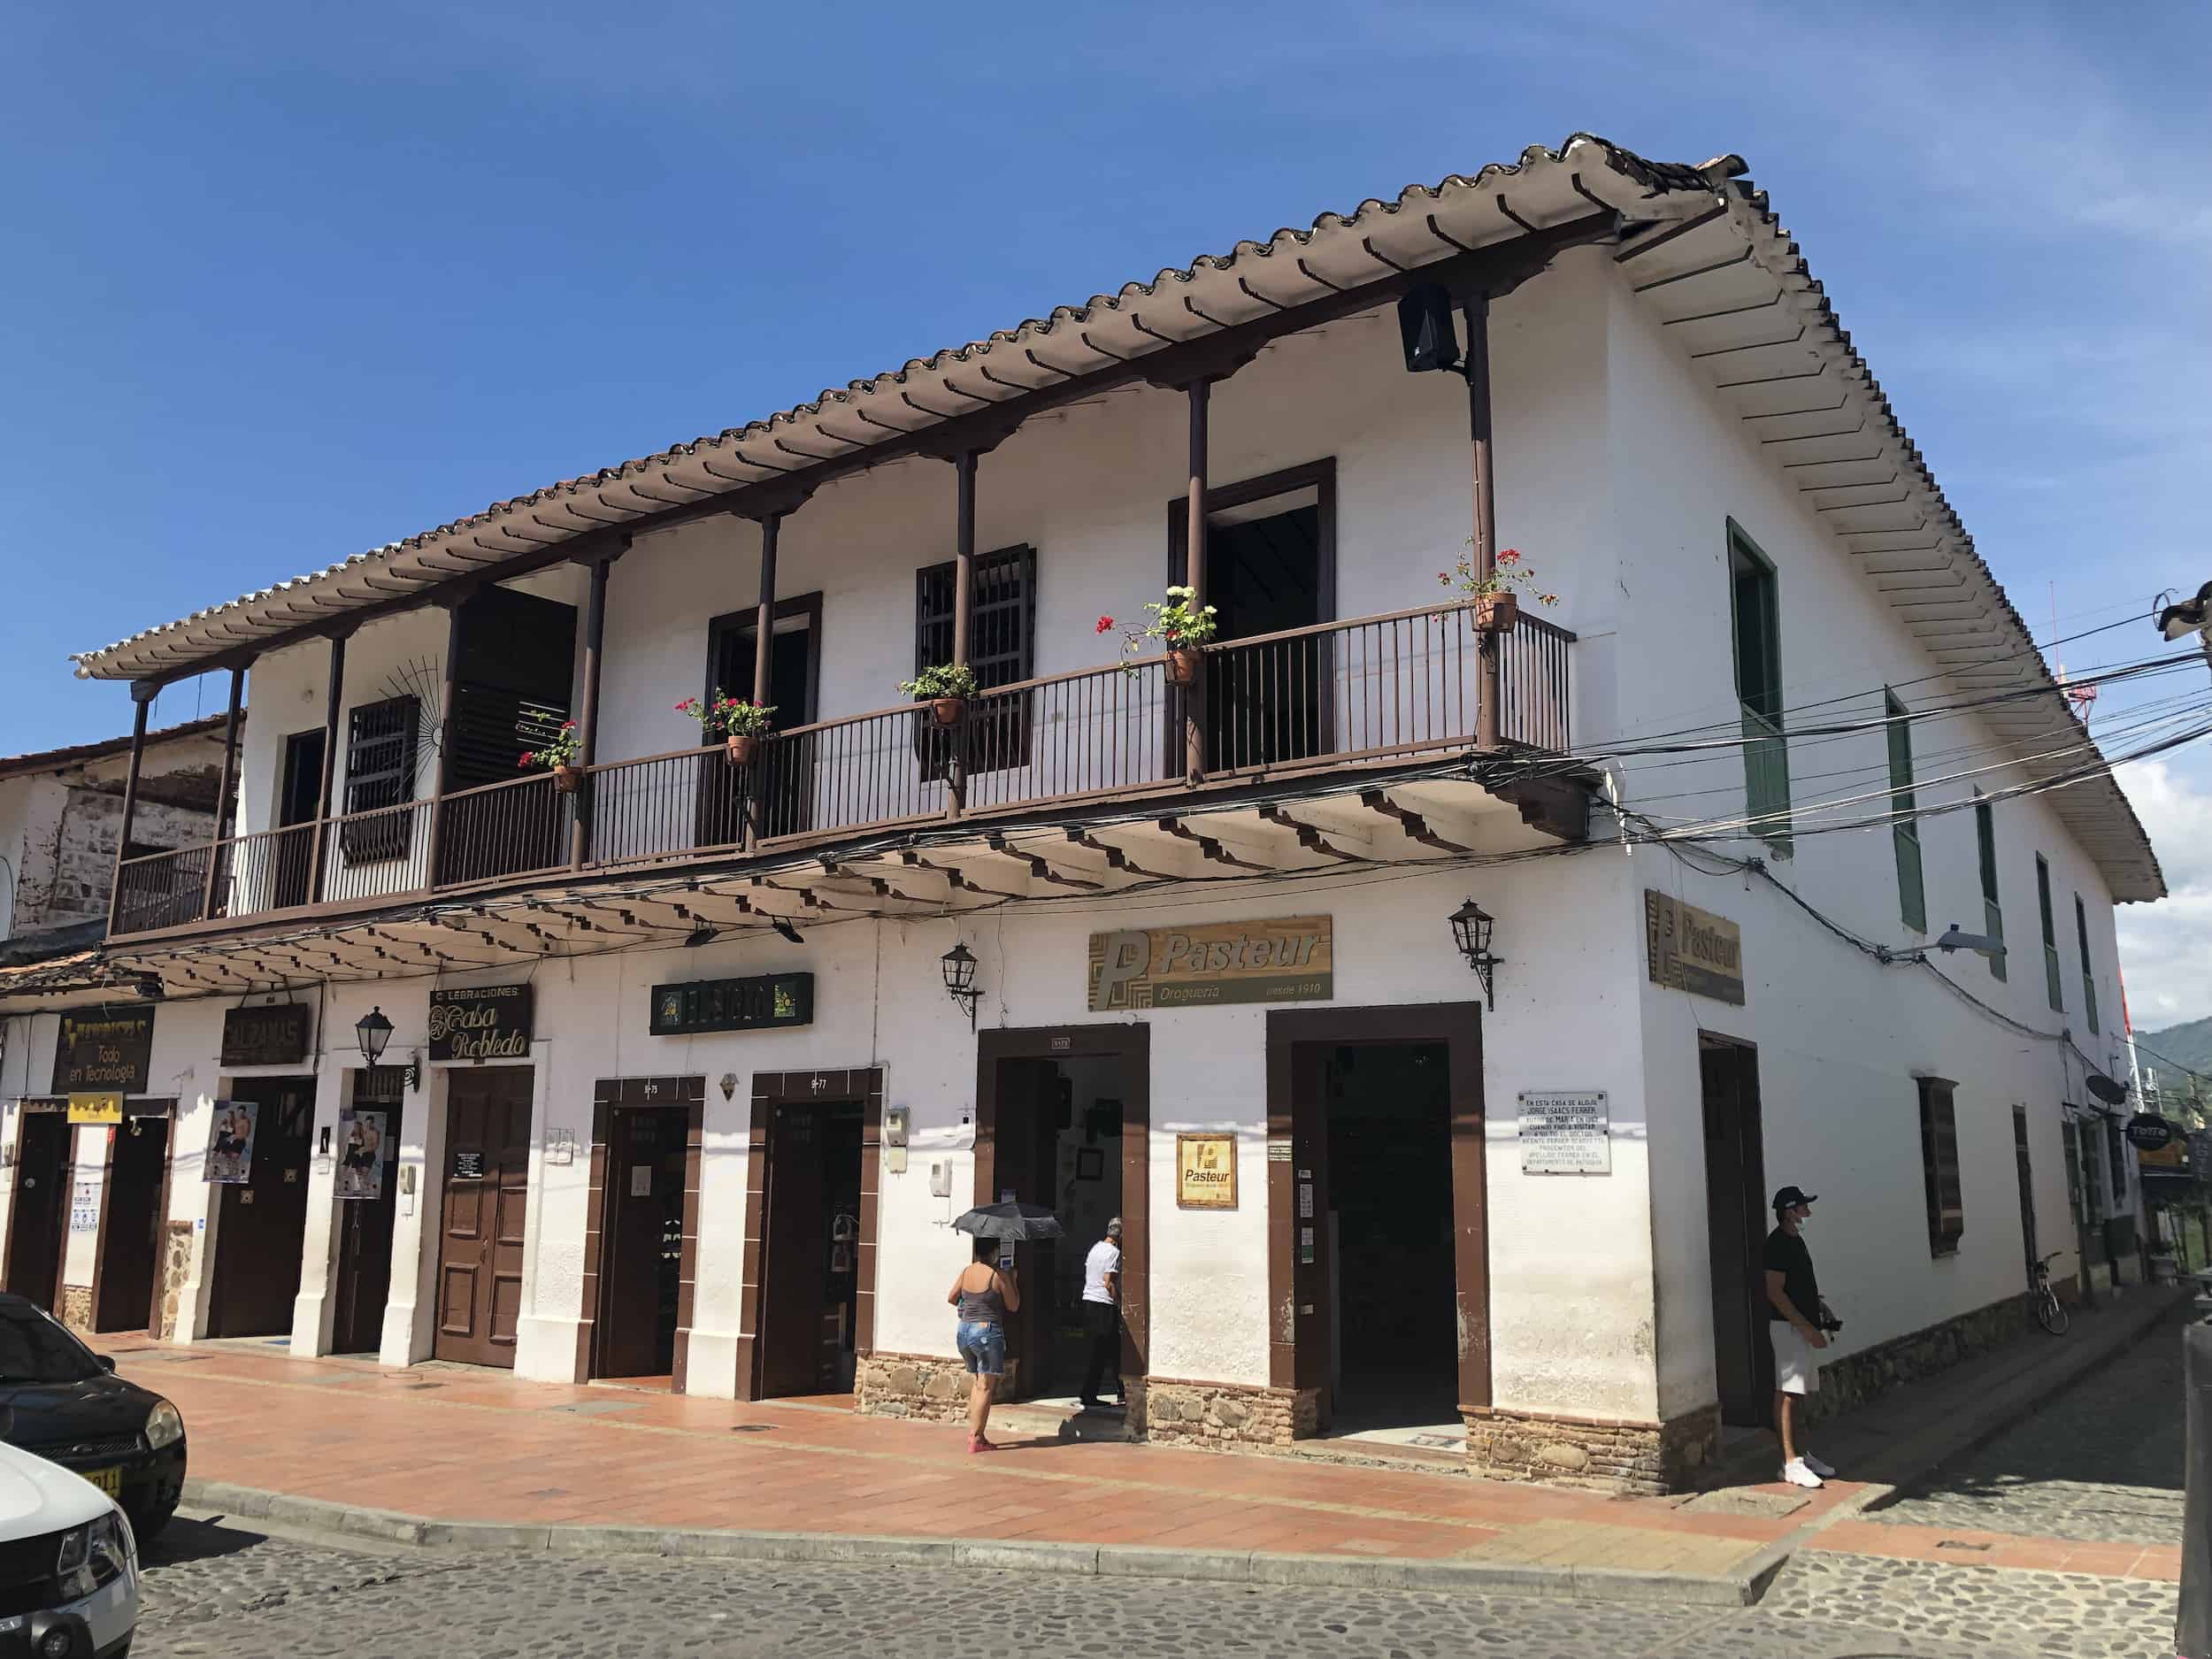 House where Jorge Isaacs stayed at Plaza Mayor Simón Bolívar in Santa Fe de Antioquia, Colombia